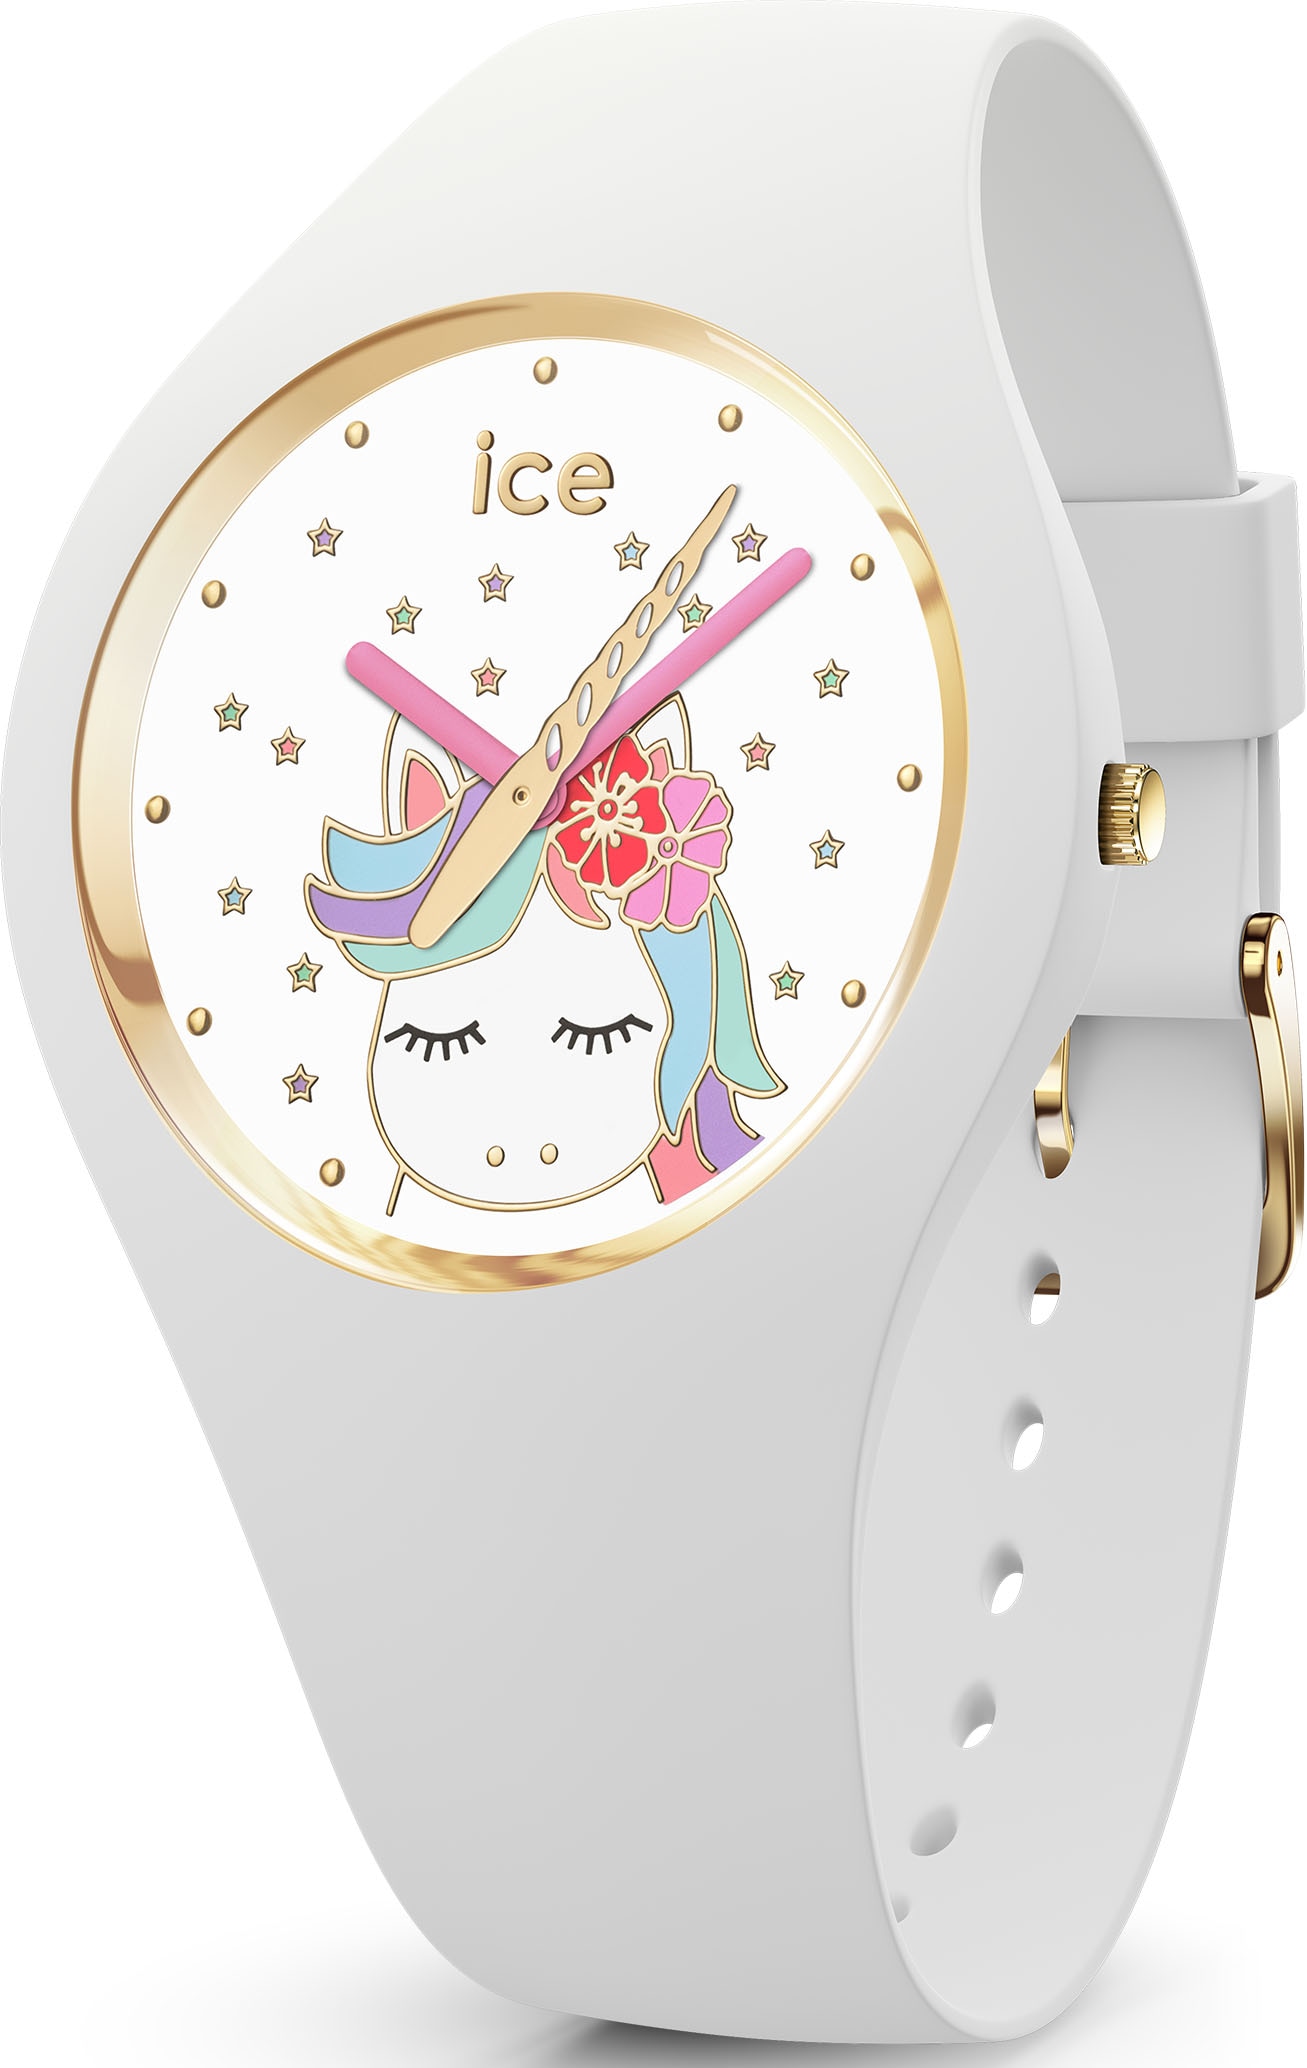 ice-watch Quarzuhr »ICE auch ideal als fantasia, Geschenk bei 016721«